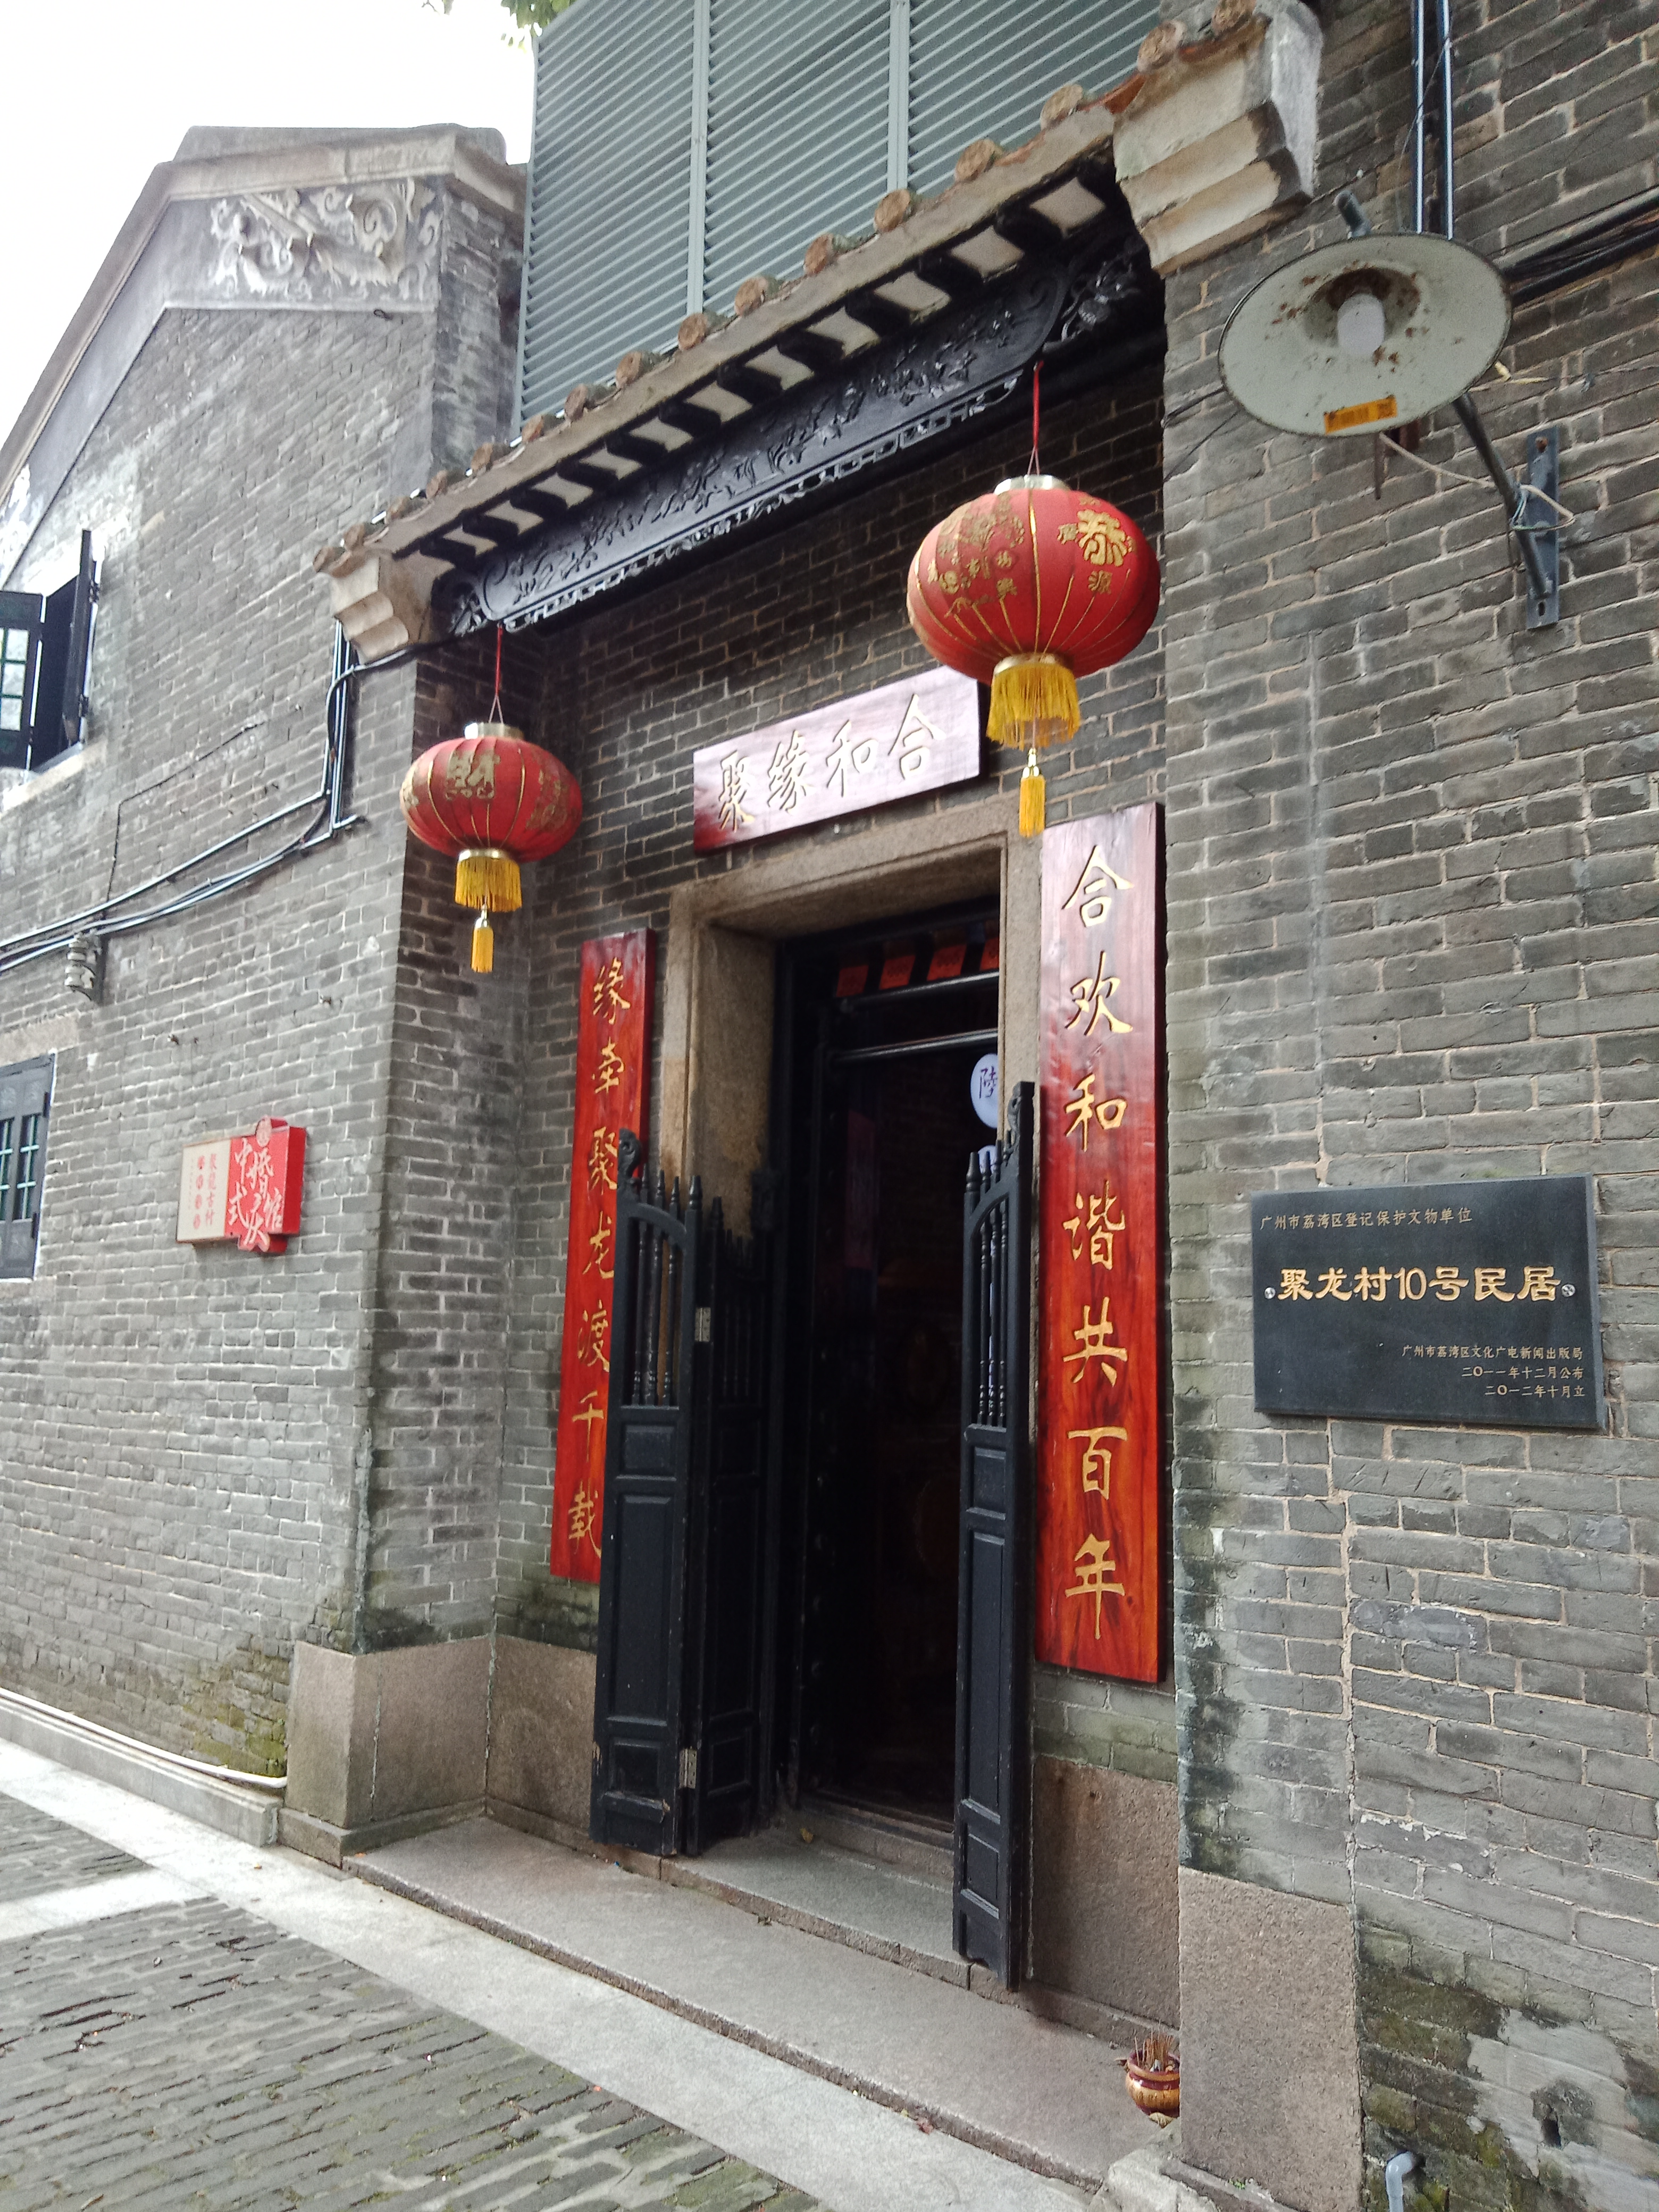 聚龙古村建于1879年,由广东台山邝氏族人兴建,是广州现存最完整的